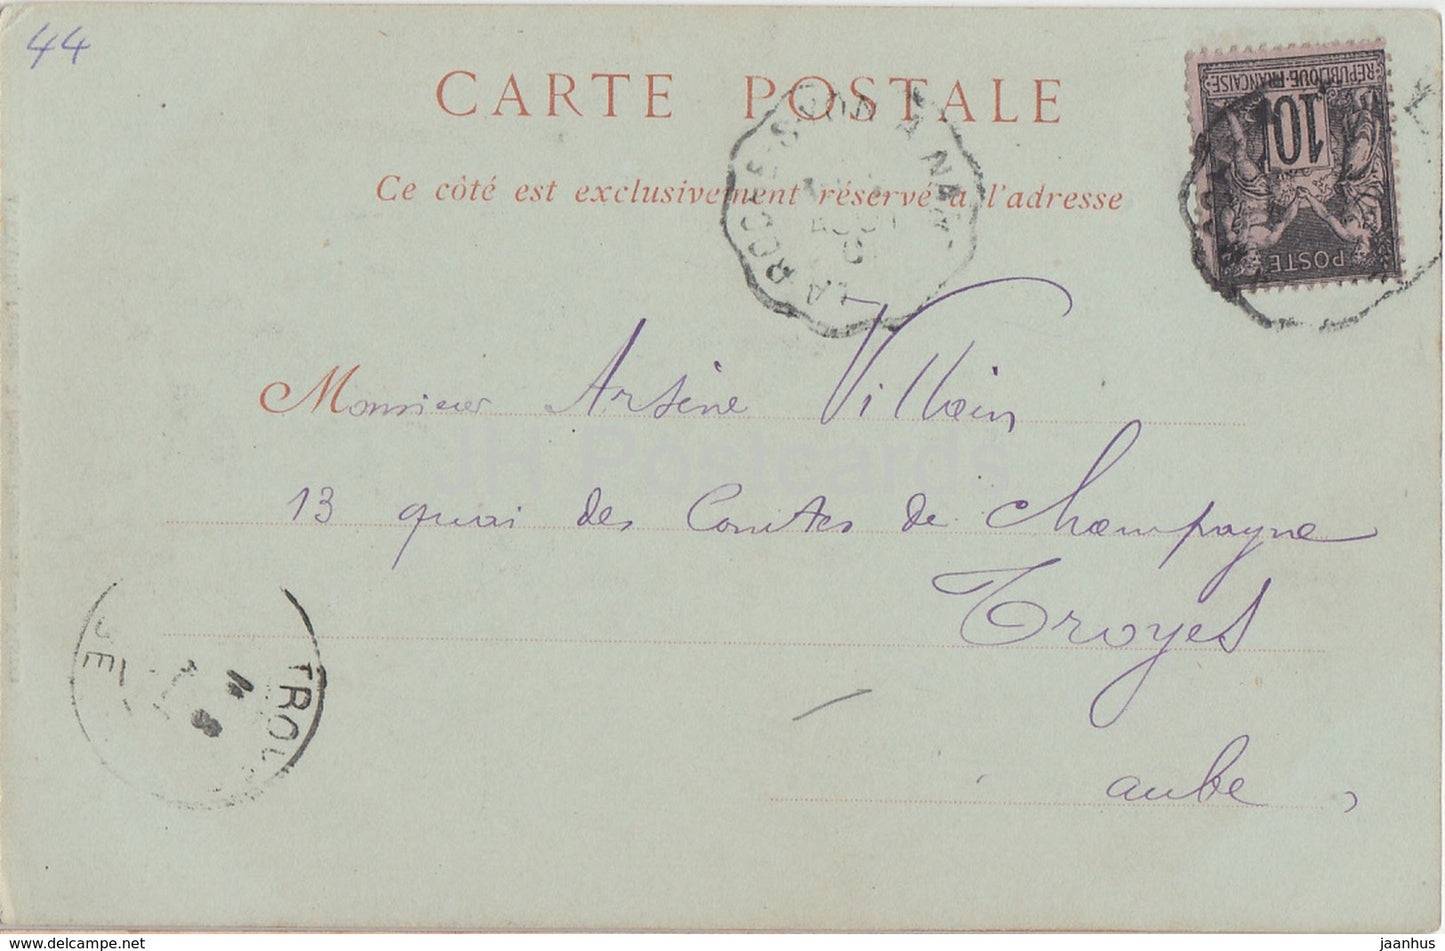 Env de Nantes - Château de Clisson - château - 42 - carte postale ancienne - 1901 - France - occasion